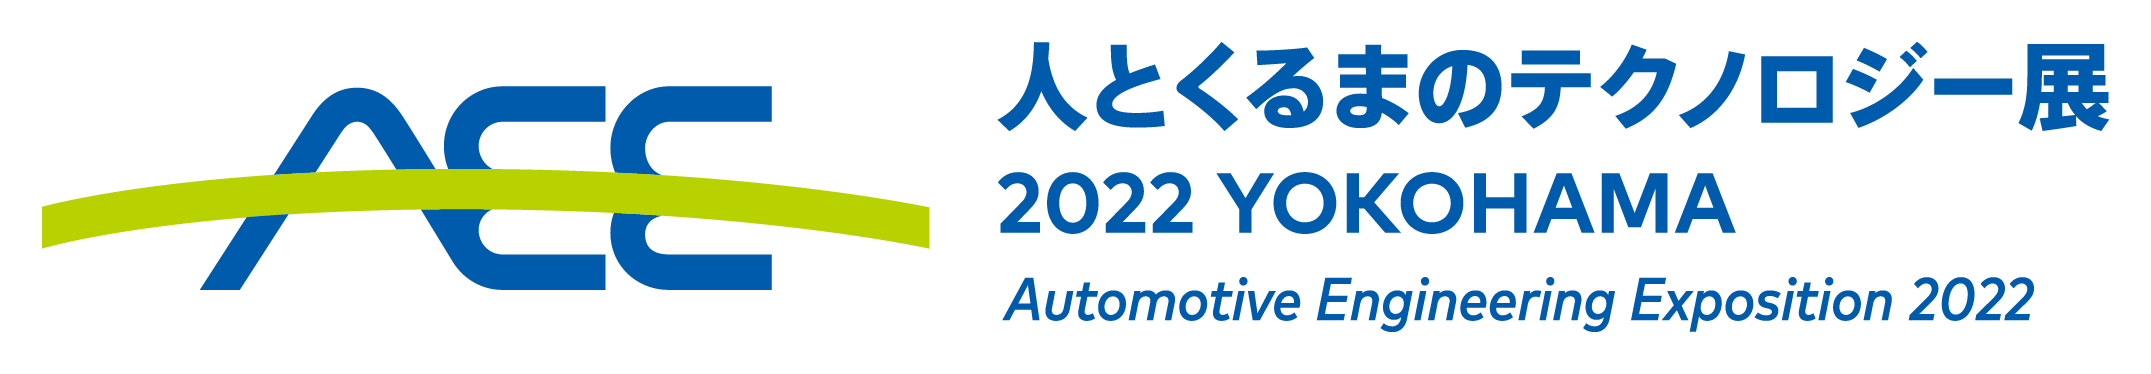 人とくるまのテクノロジー展 2022 YOKOHAMAにOKIエンジニアリングは出展します